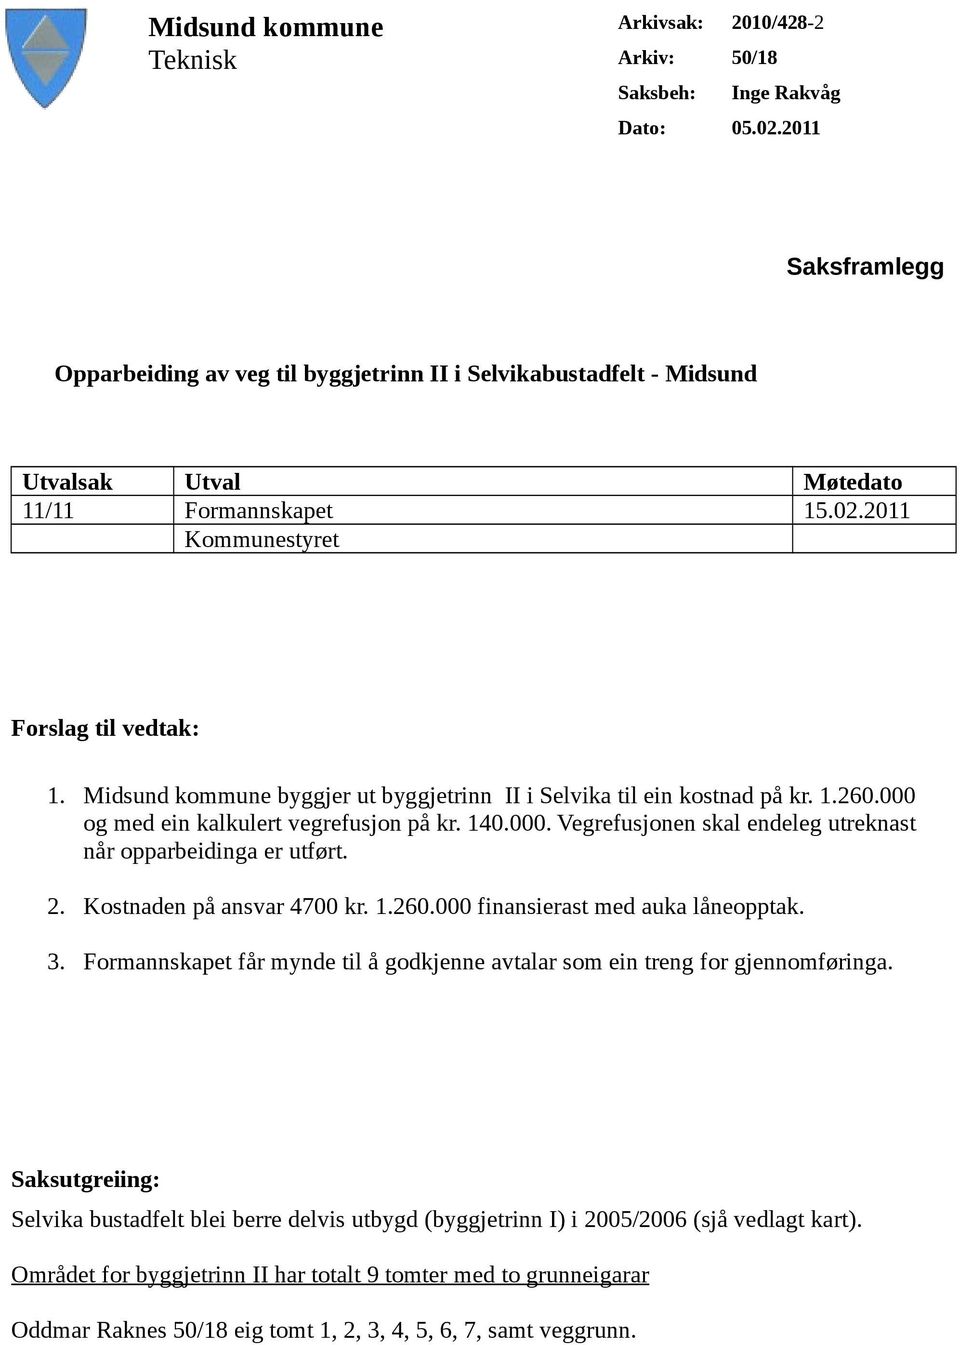 Midsund kommune byggjer ut byggjetrinn II i Selvika til ein kostnad på kr. 1.260.000 og med ein kalkulert vegrefusjon på kr. 140.000. Vegrefusjonen skal endeleg utreknast når opparbeidinga er utført.